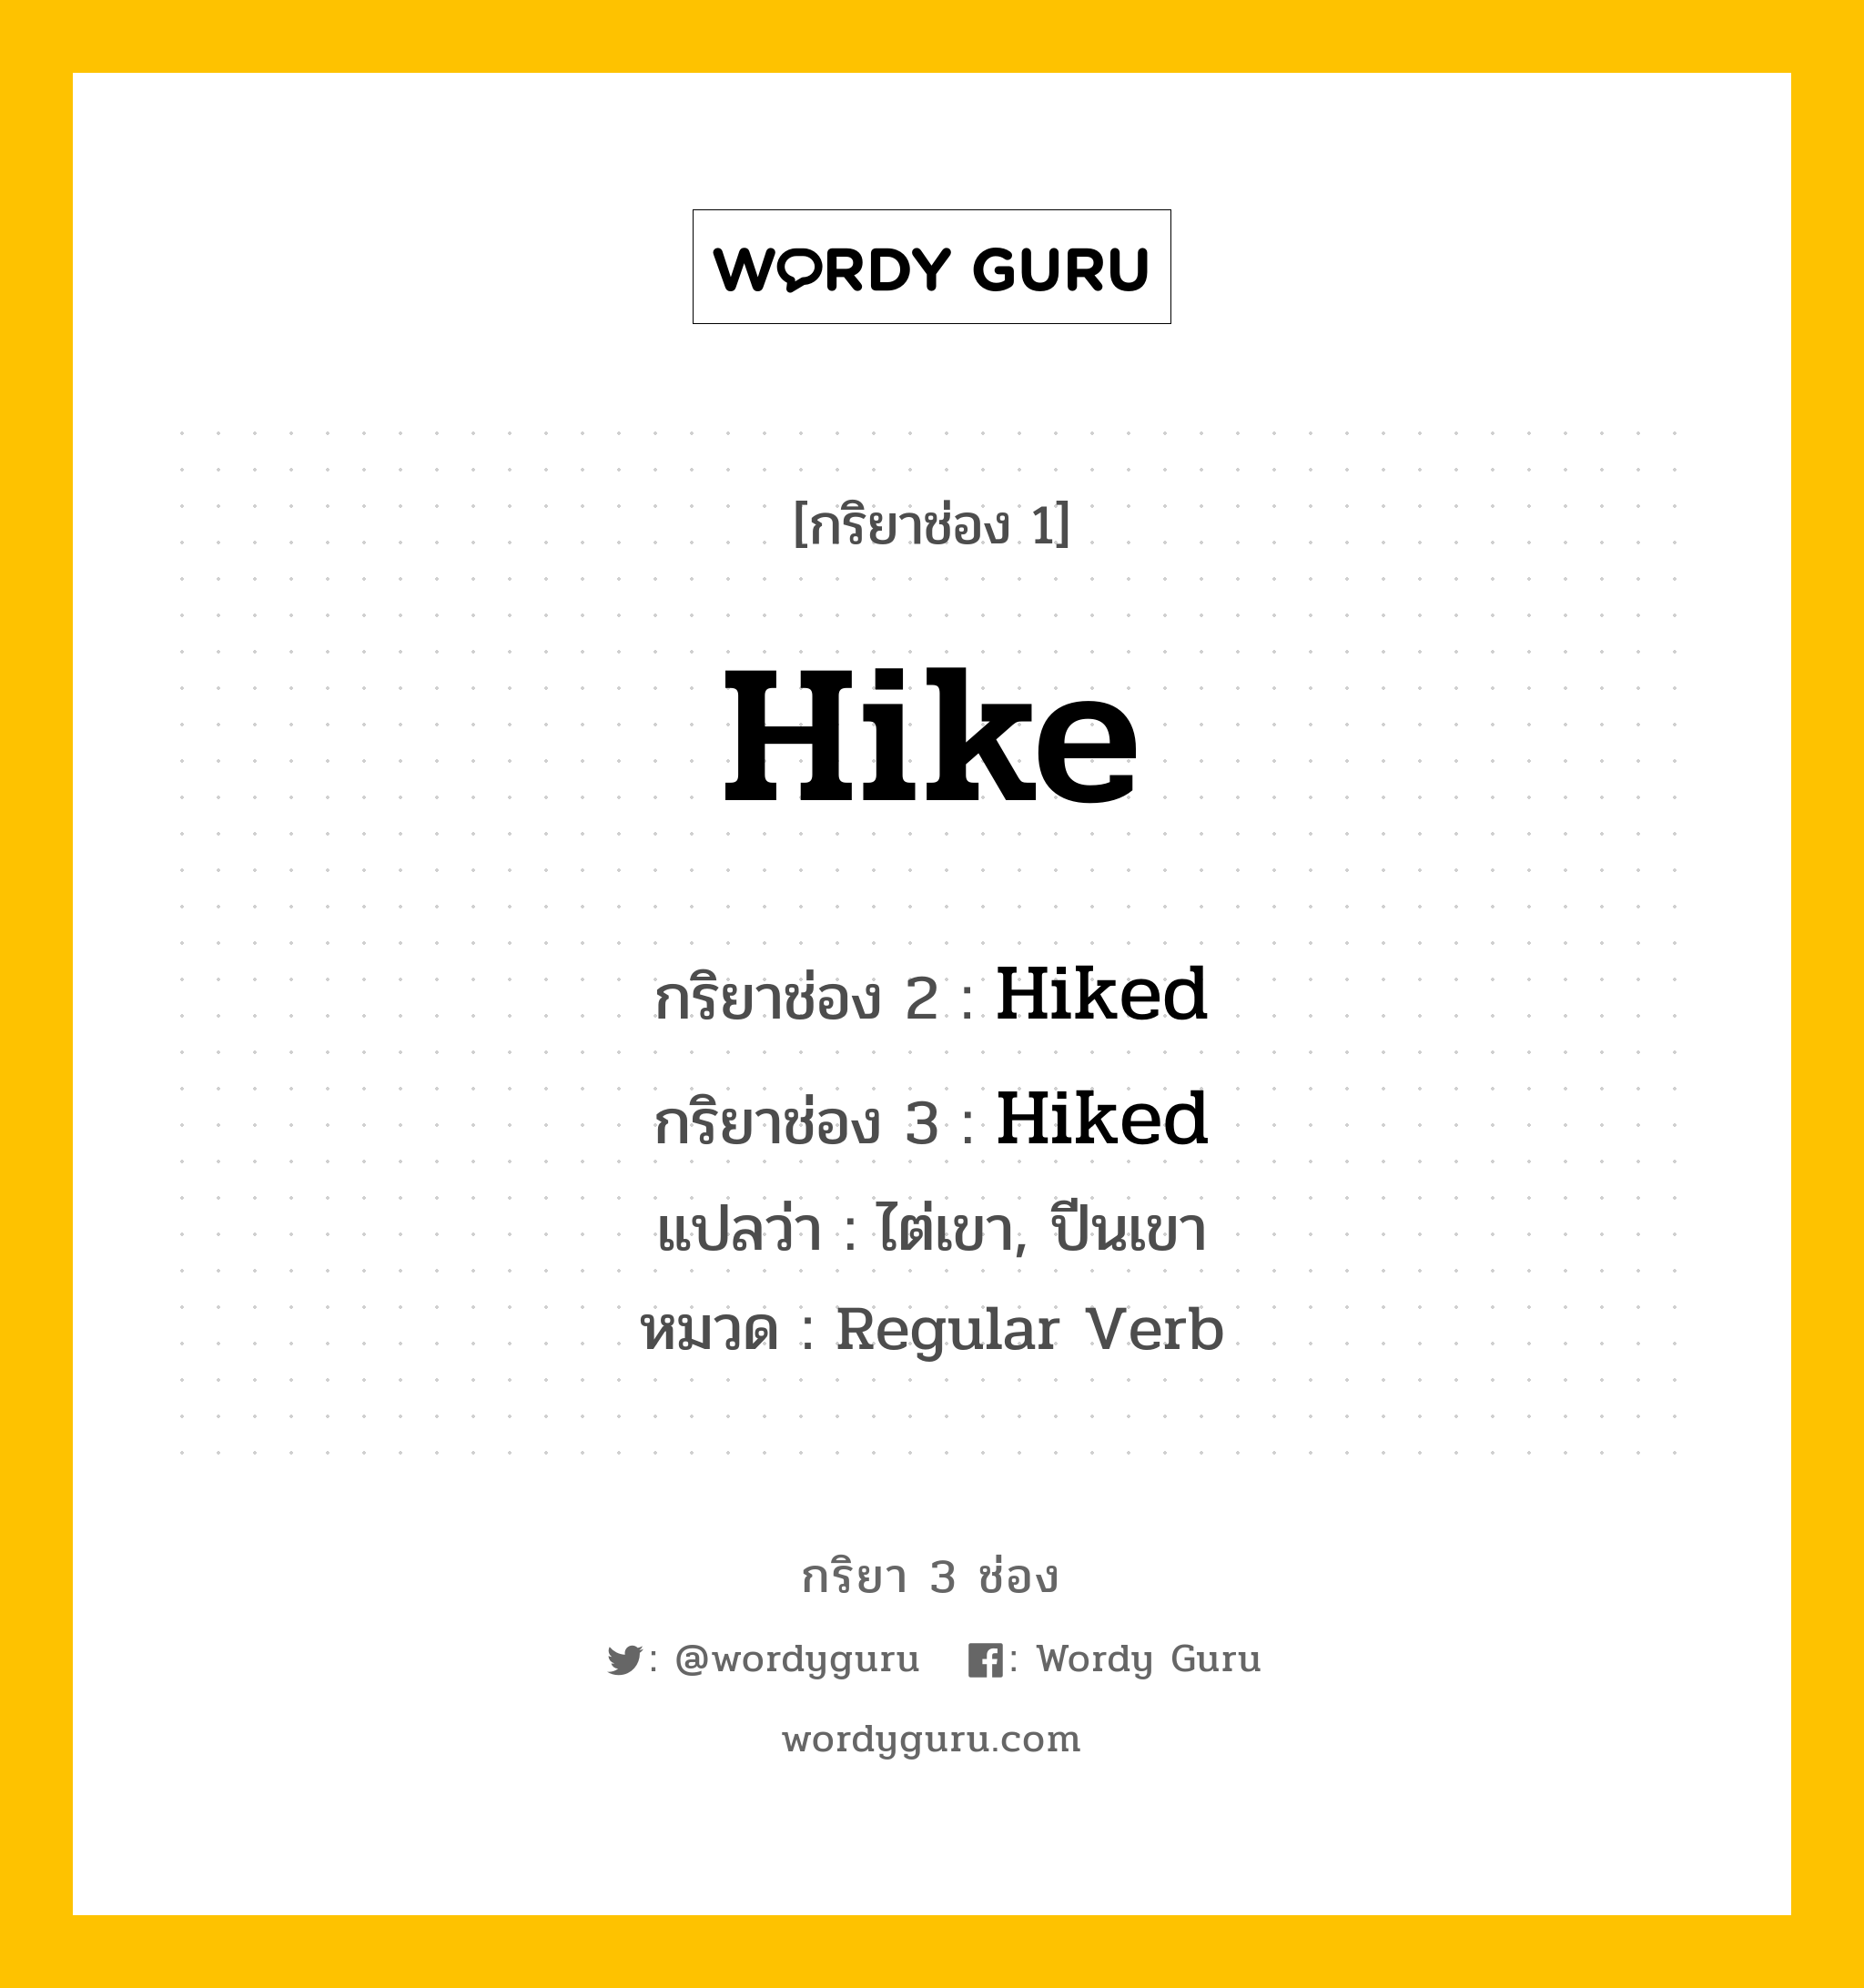 กริยา 3 ช่อง: Hike ช่อง 2 Hike ช่อง 3 คืออะไร, กริยาช่อง 1 Hike กริยาช่อง 2 Hiked กริยาช่อง 3 Hiked แปลว่า ไต่เขา, ปีนเขา หมวด Regular Verb หมวด Regular Verb